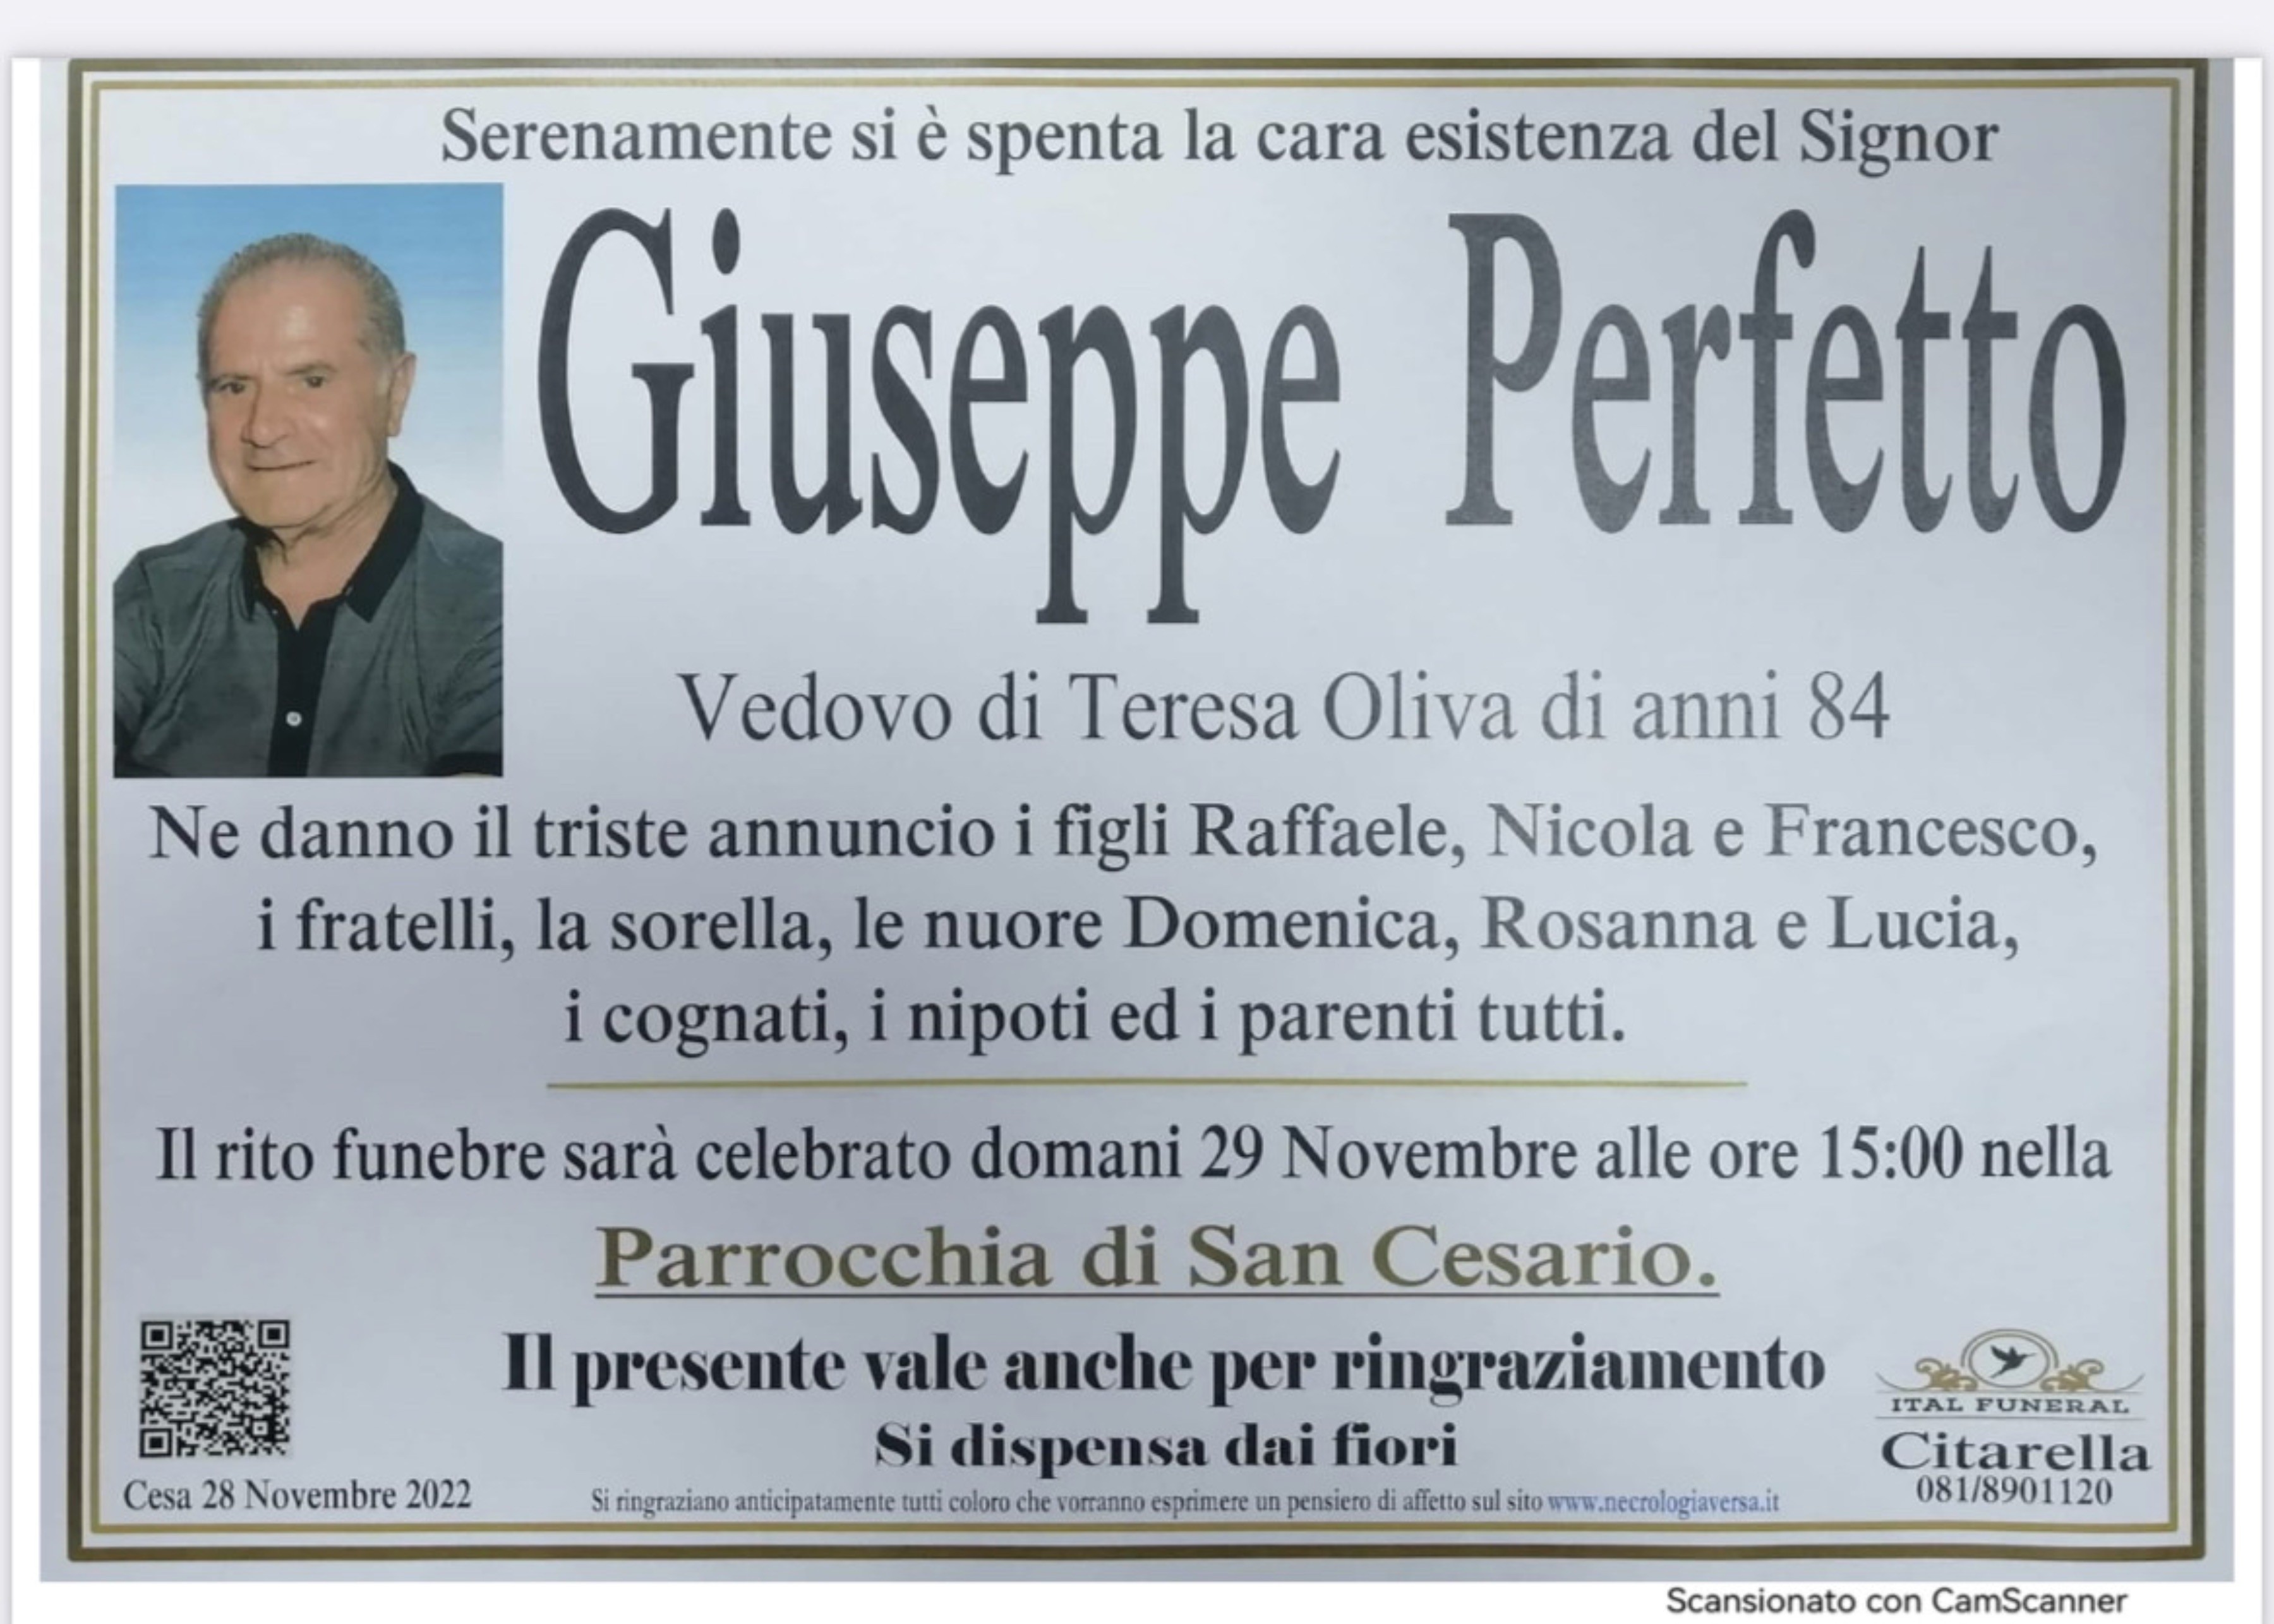 Giuseppe Perfetto